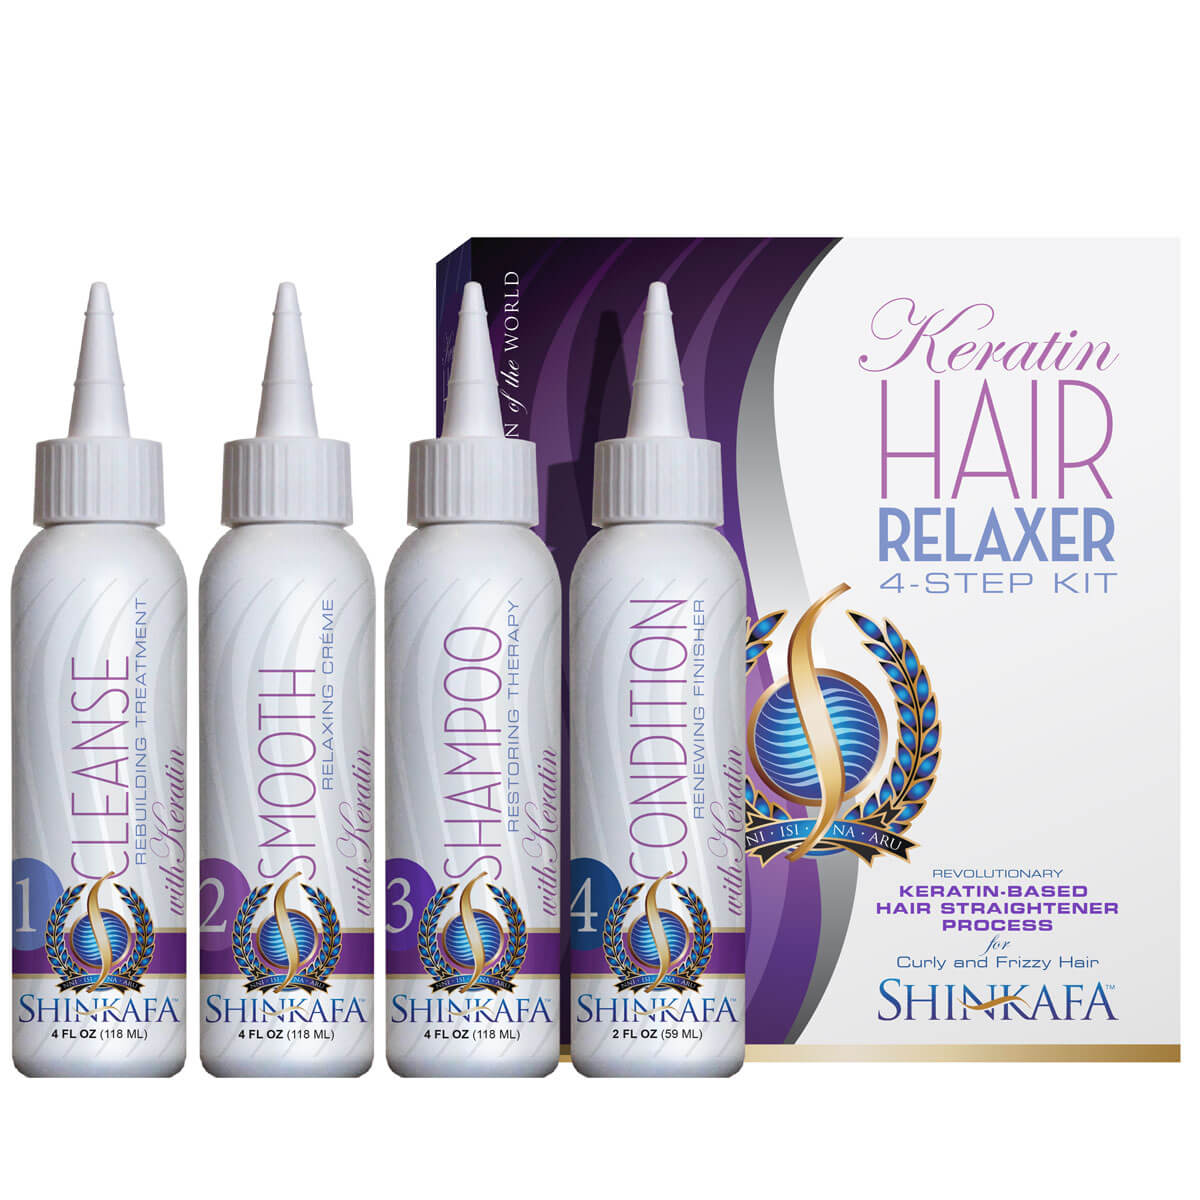 Shinkafa Keratin Hair Relaxer 4-Step Kit